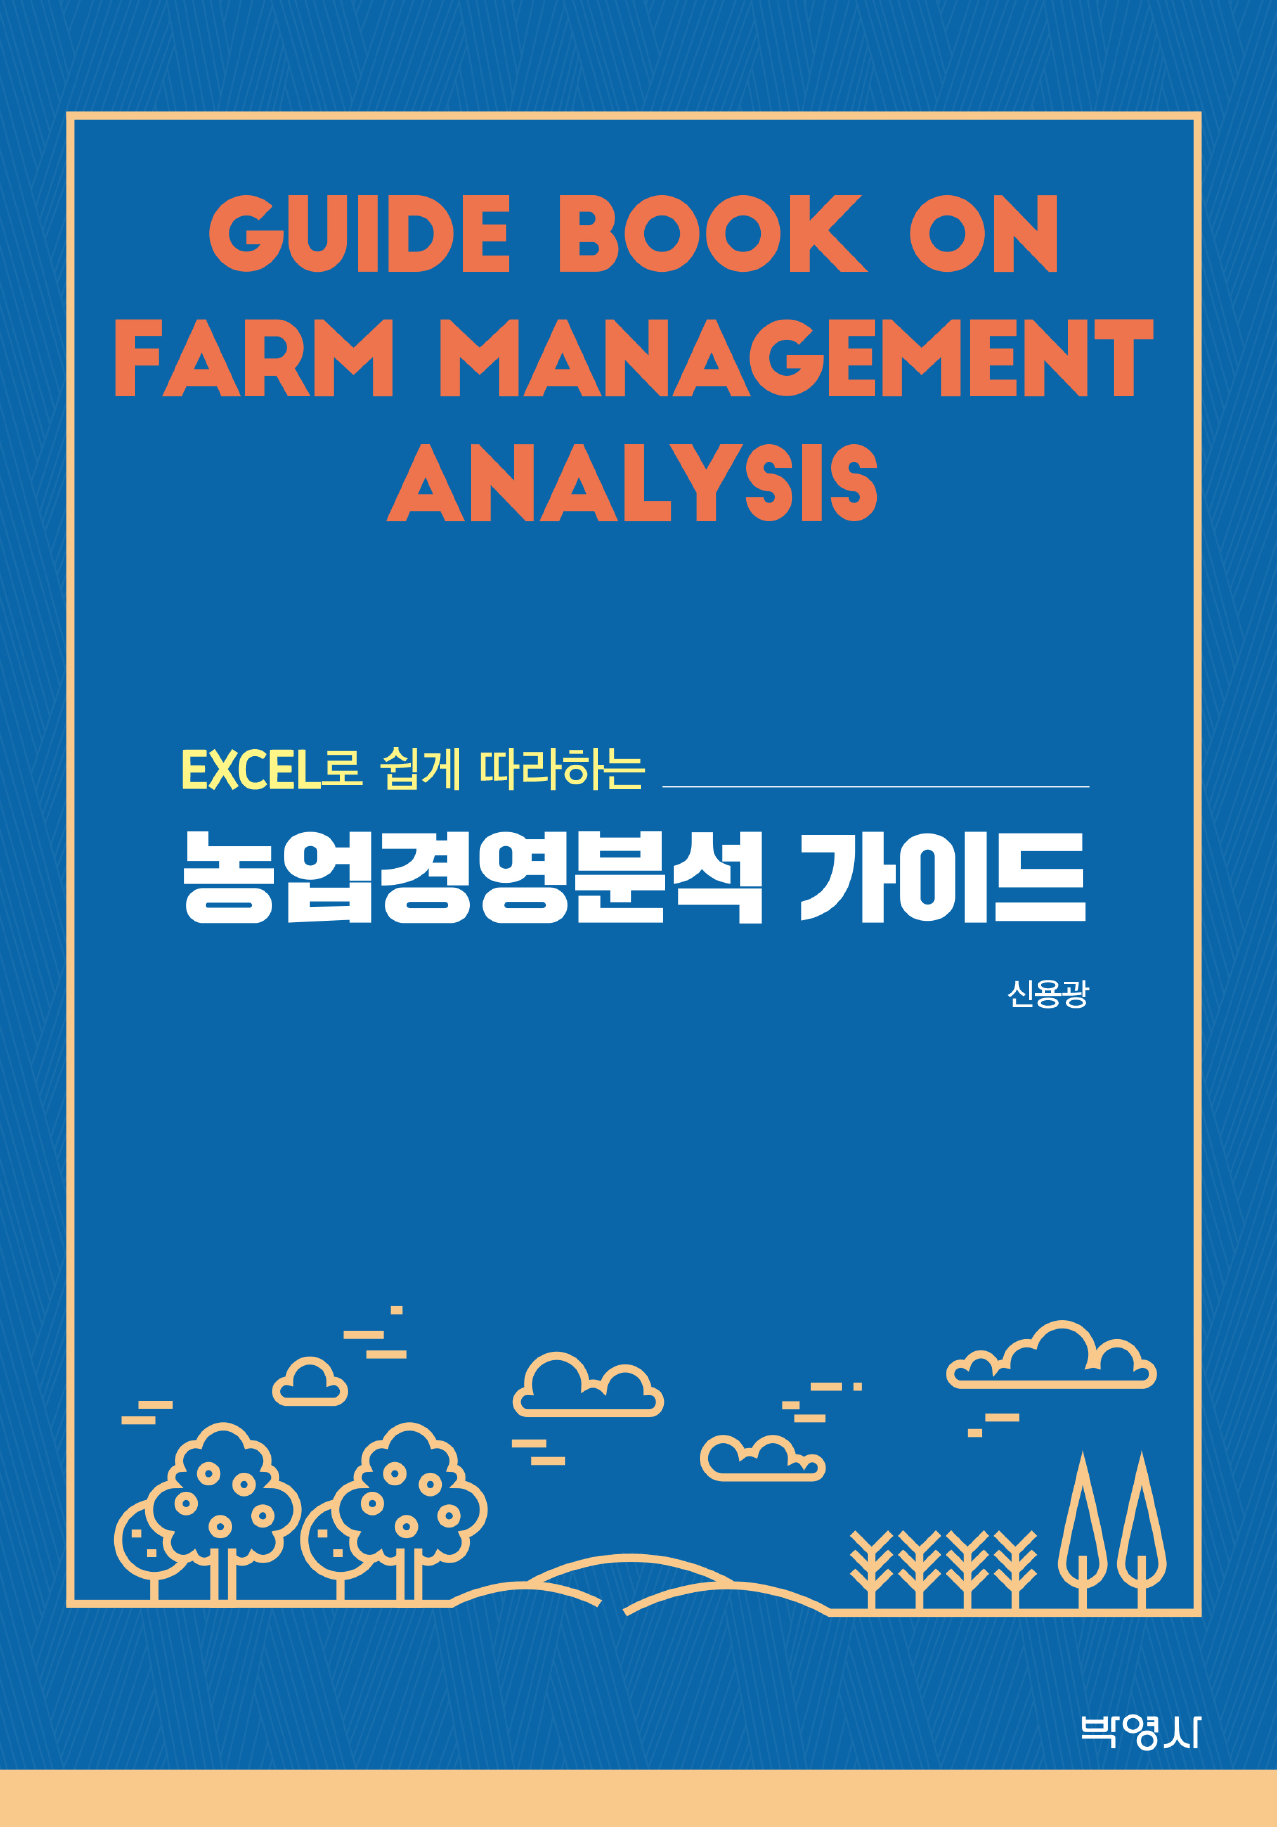 EXCEL로 쉽게 따라하는 농업경영분석 가이드